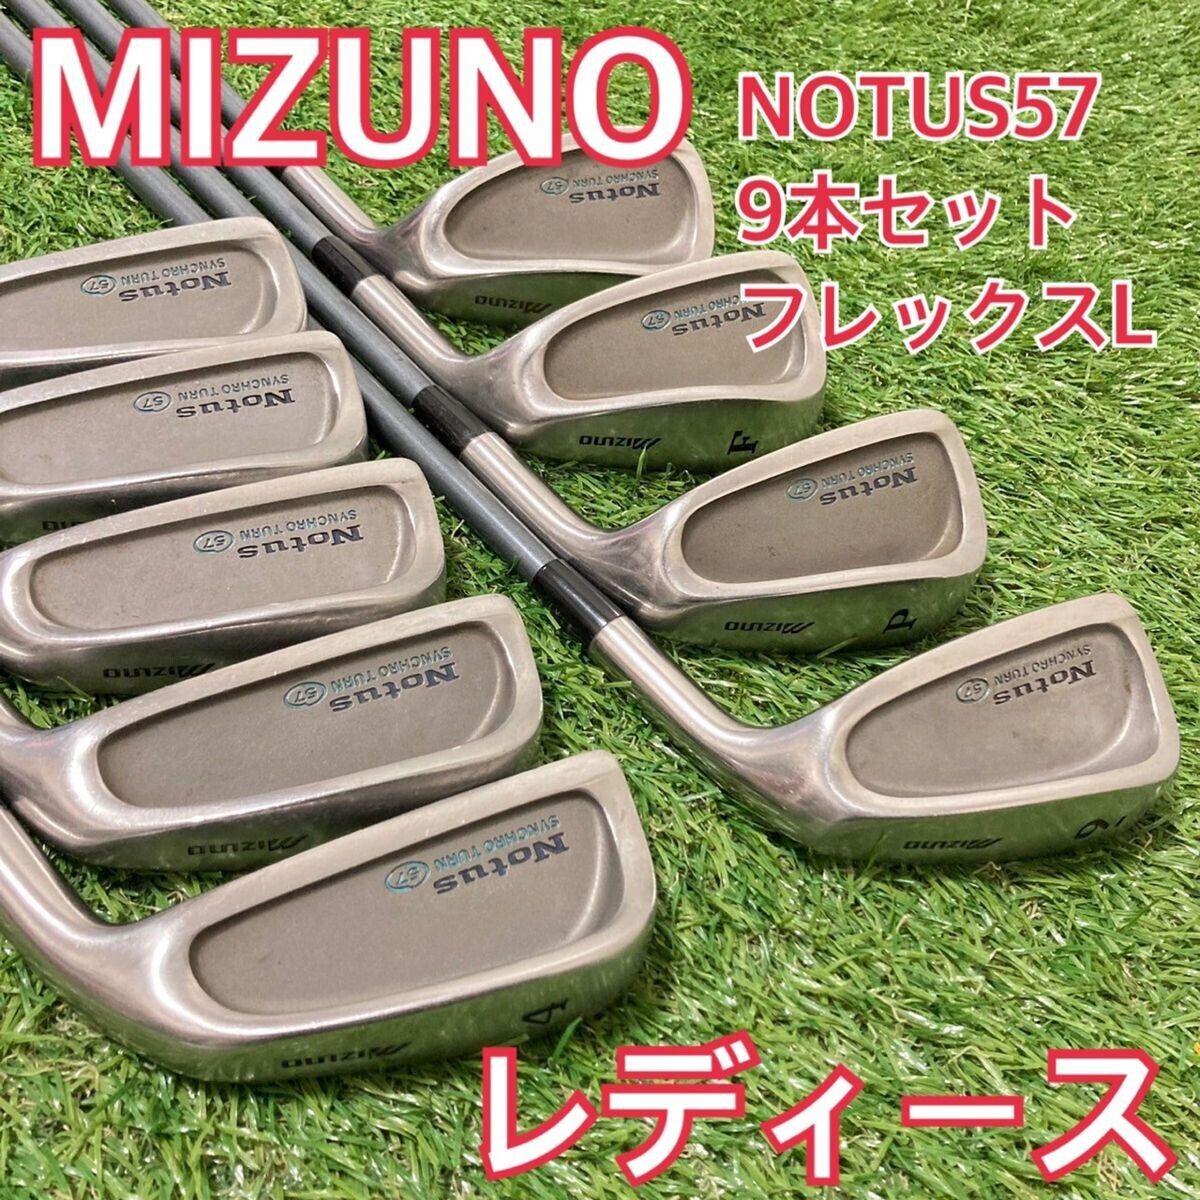 [Luxury 9-piece set ] Mizuno Ladies Iron Set L 4-9, PW, SW, AS Total 9 pieces